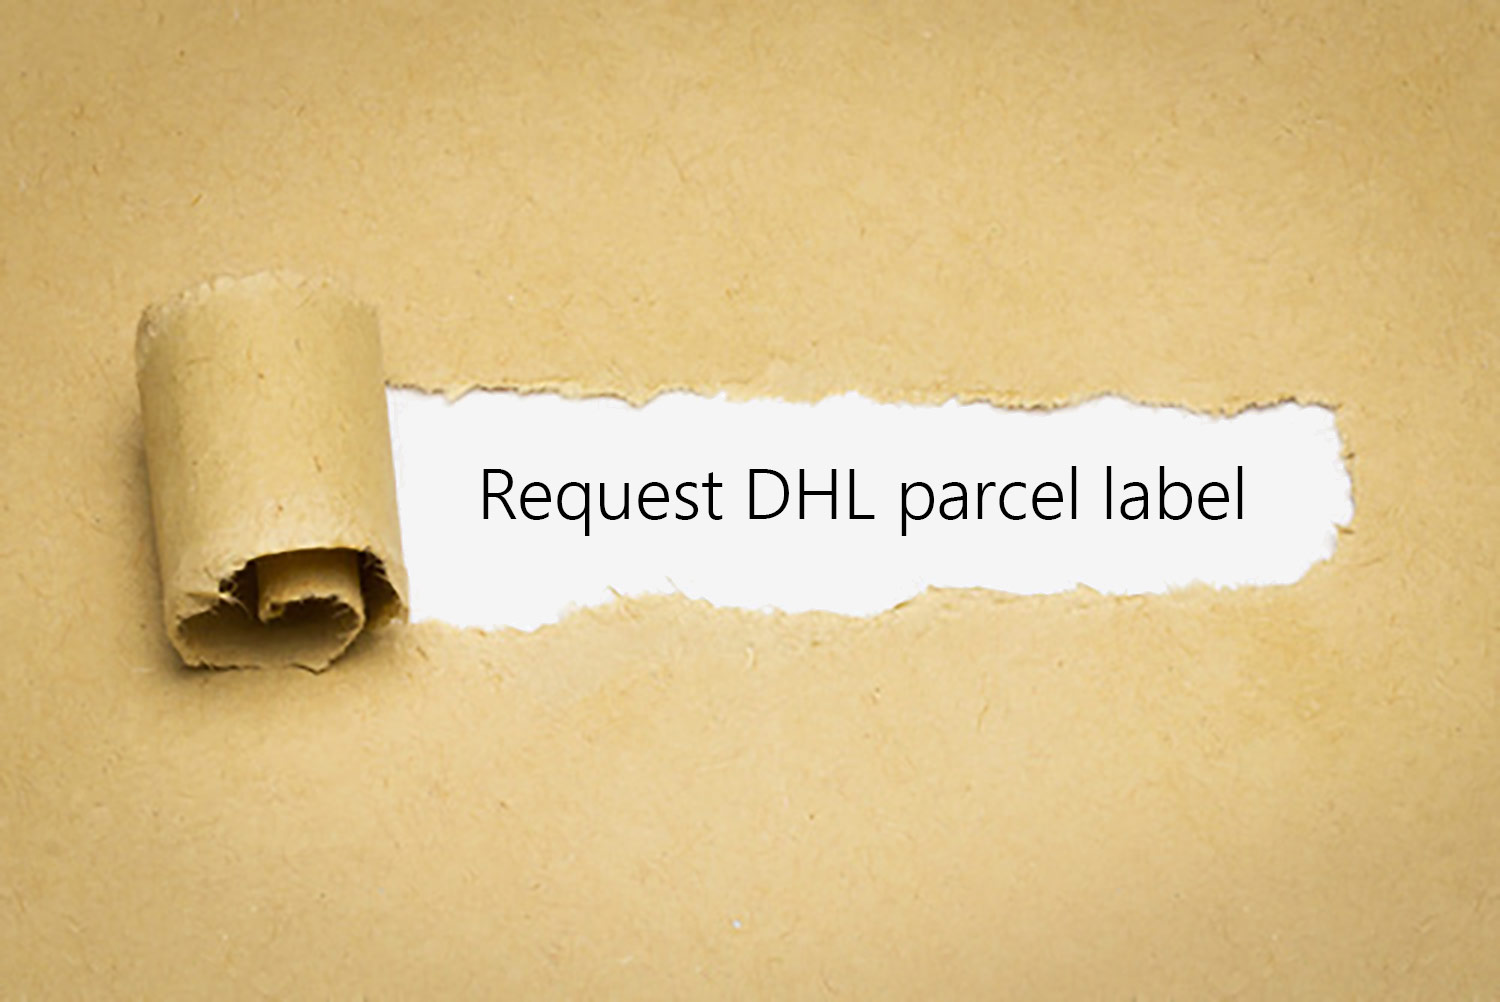 Request DHL parcel label